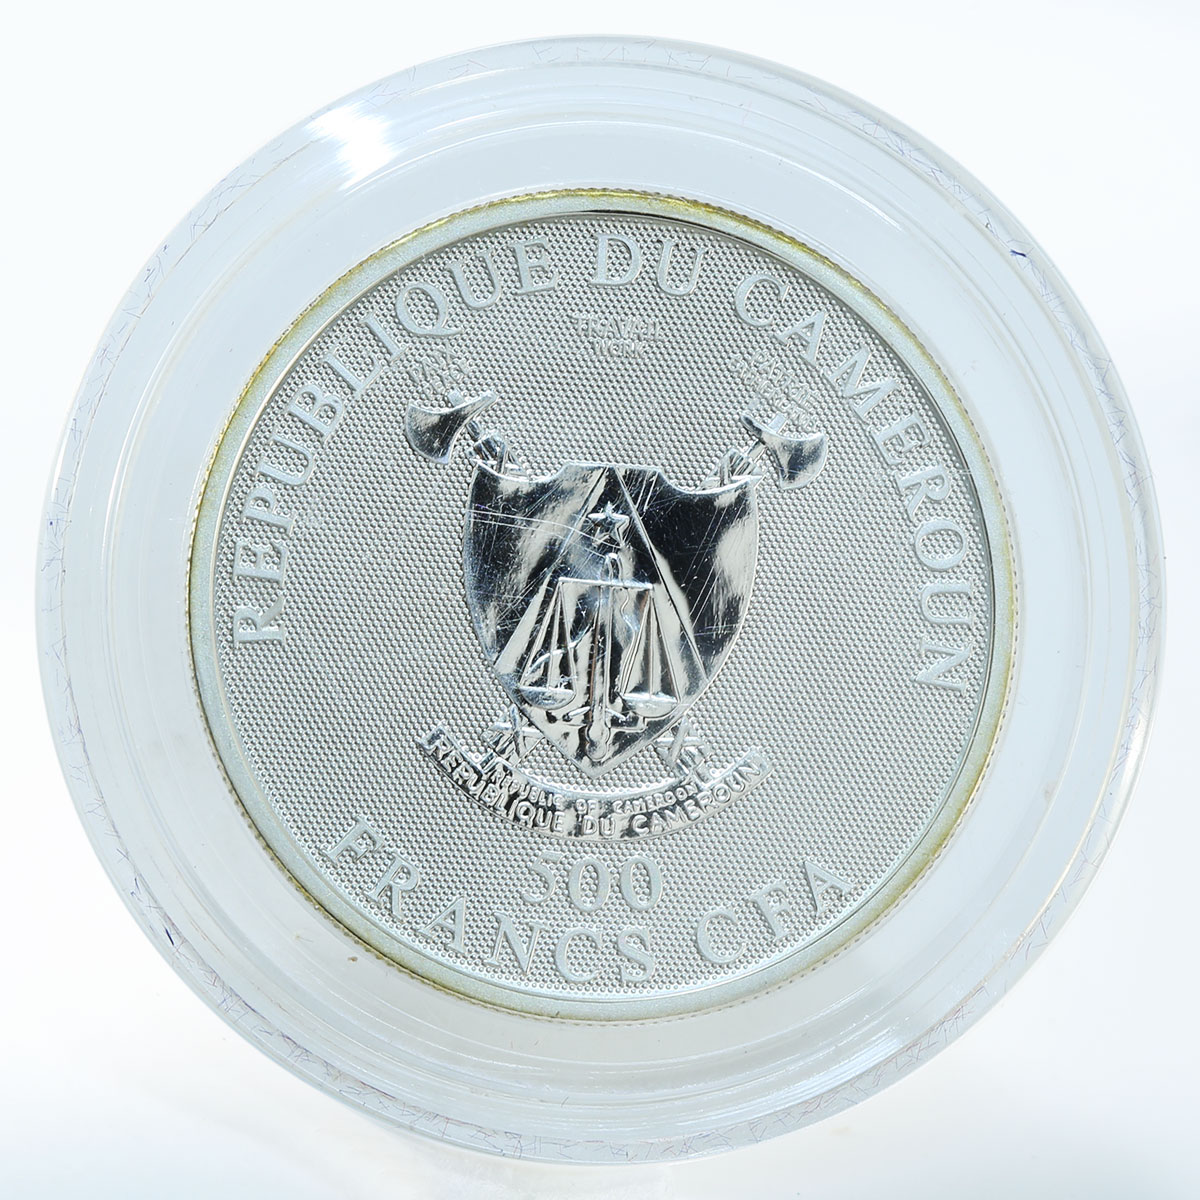 Cameroon 500 francs zodiac Virgo hologramme silver coin 2010